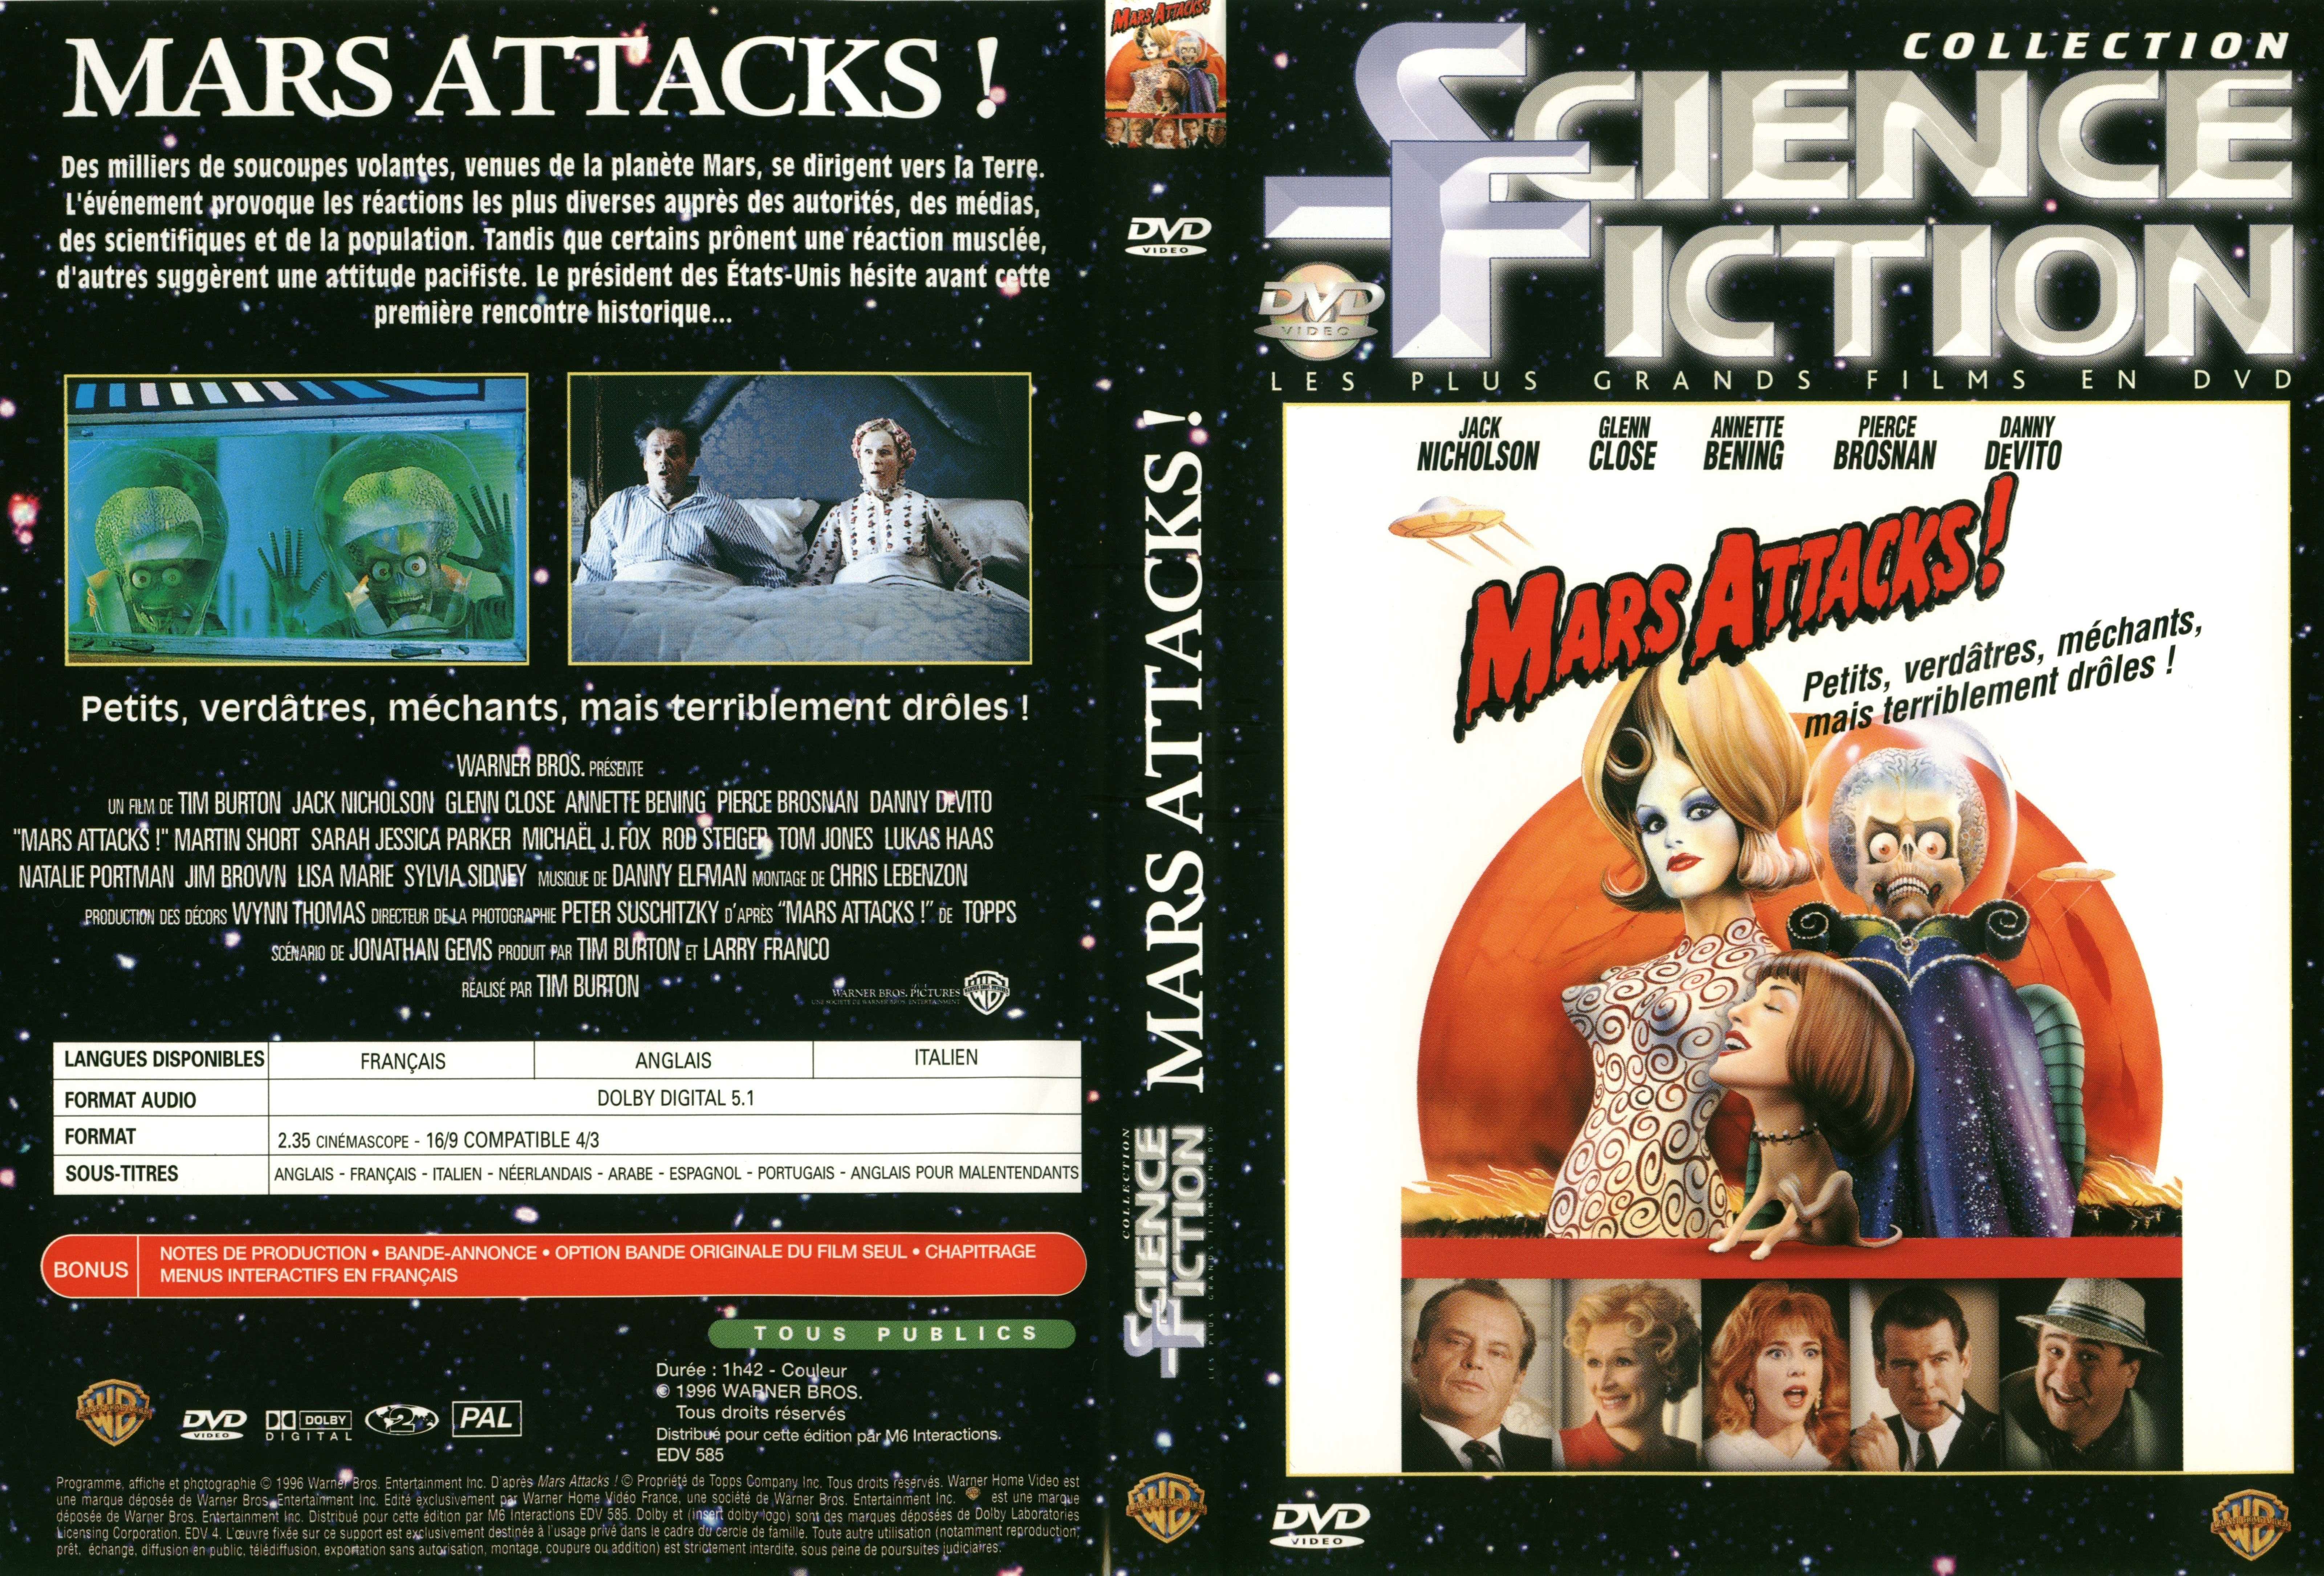 Jaquette DVD Mars attacks v2